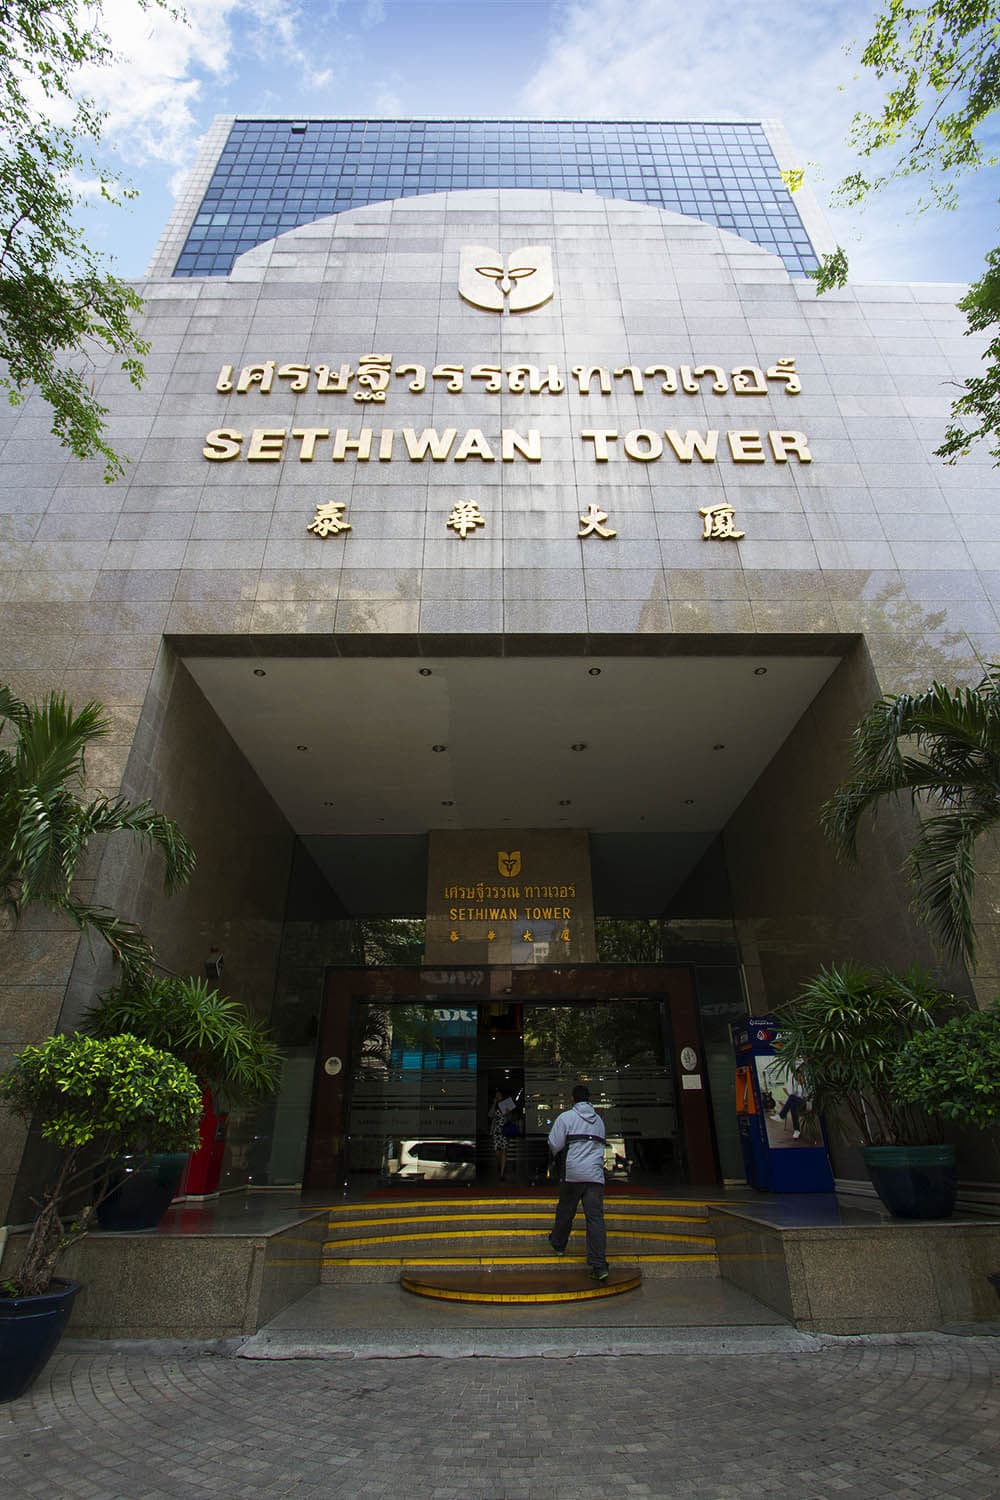 Sethiwan Tower